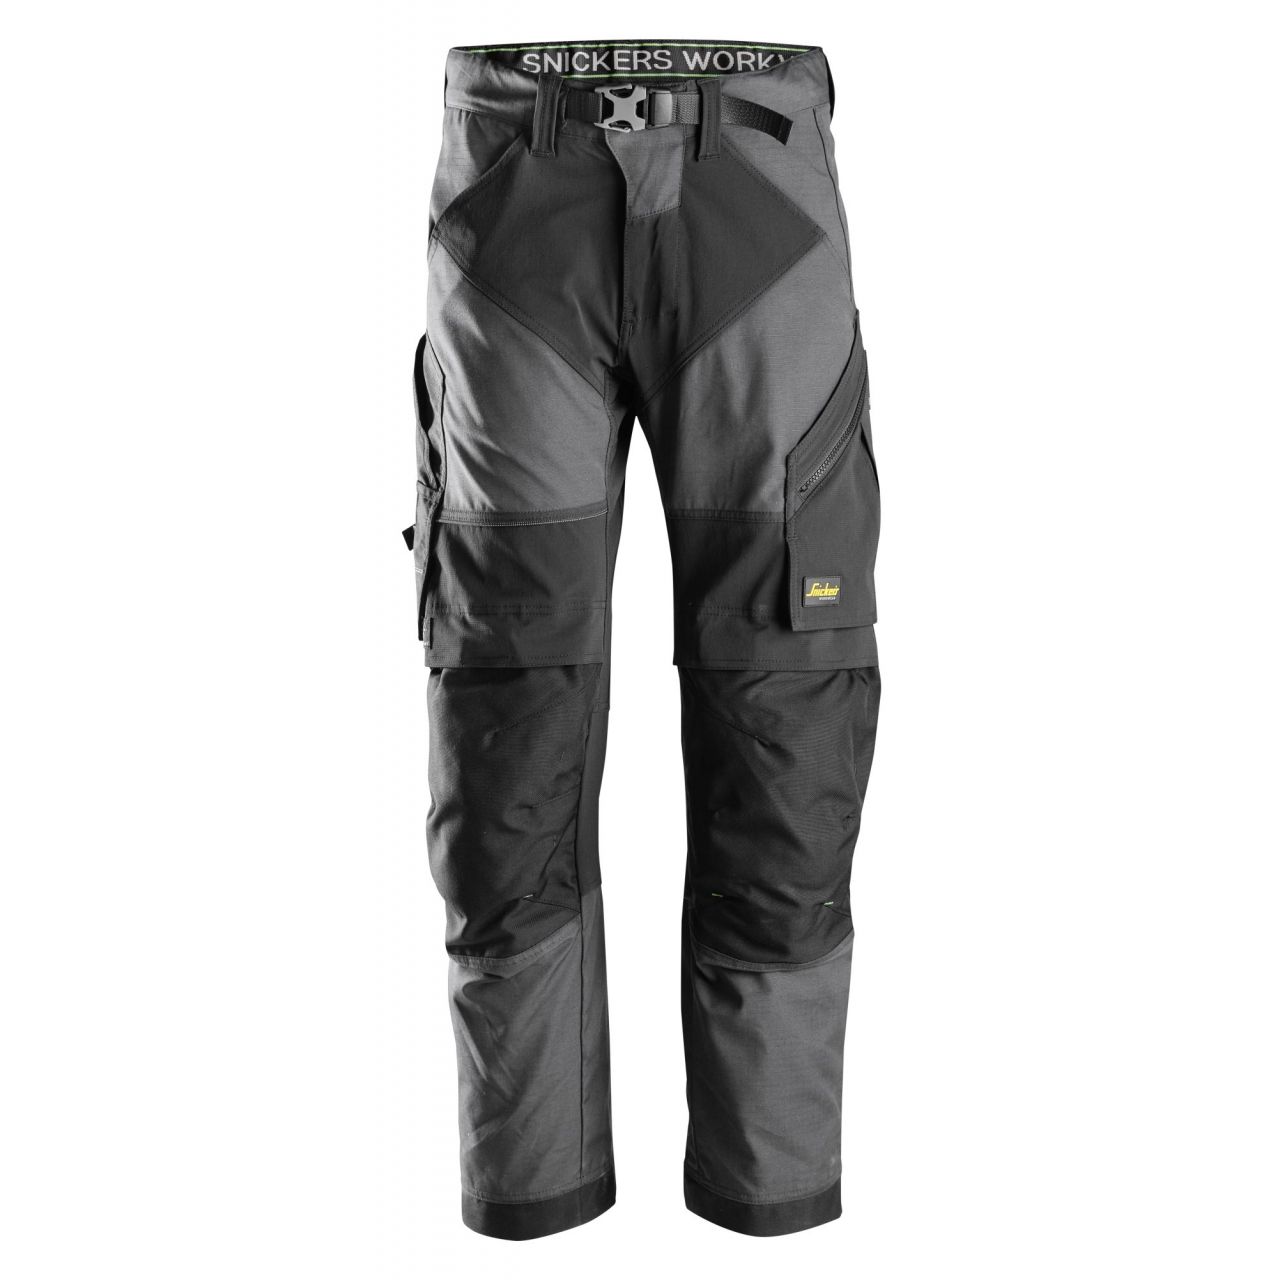 Pantalon FlexiWork+ gris acero-negro talla 112